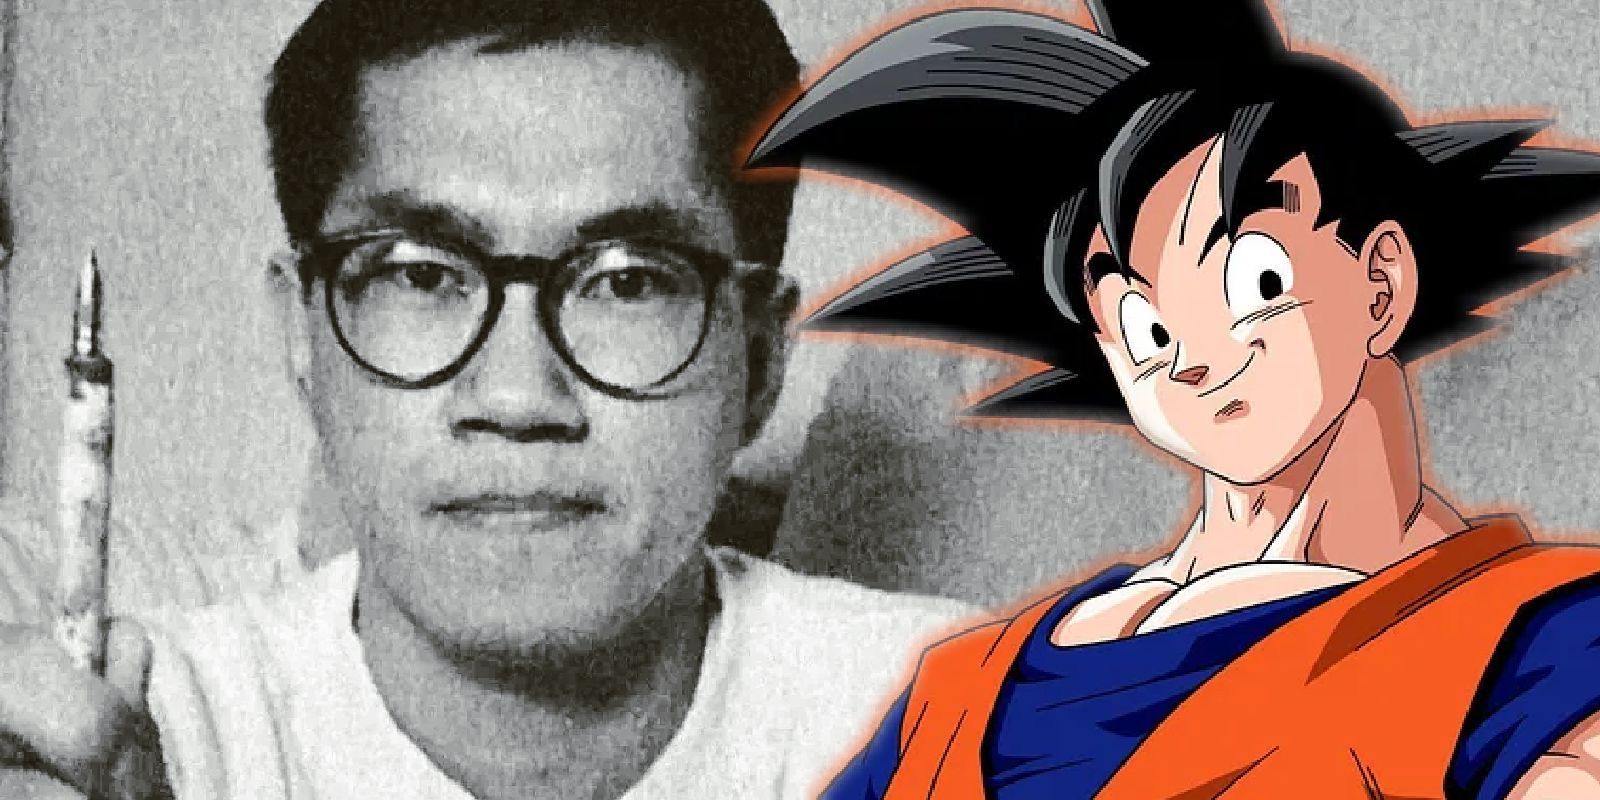 Akira Toriyama the creator of Goku and author of dragon ball